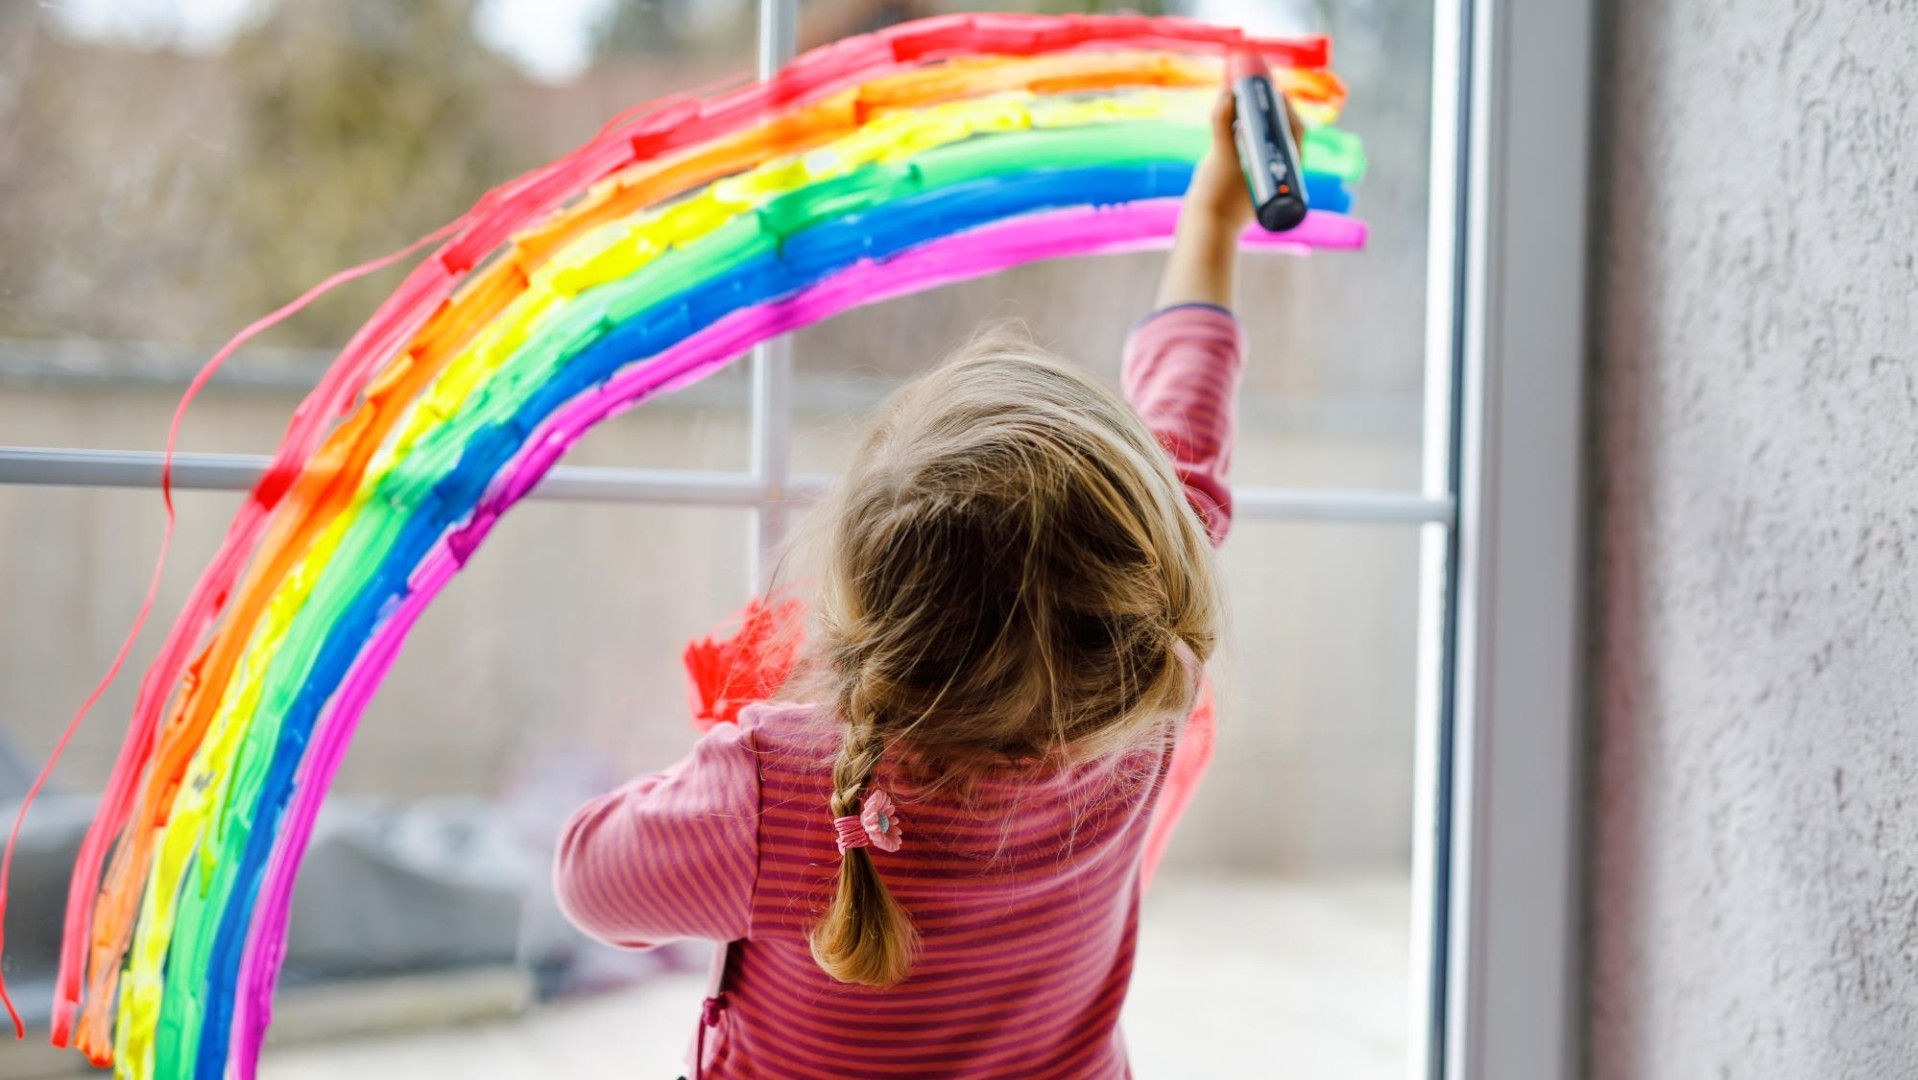 Ein Mädchen, welches an einer Fensterscheibe mit bunten Farben ein Regenbogen malt.